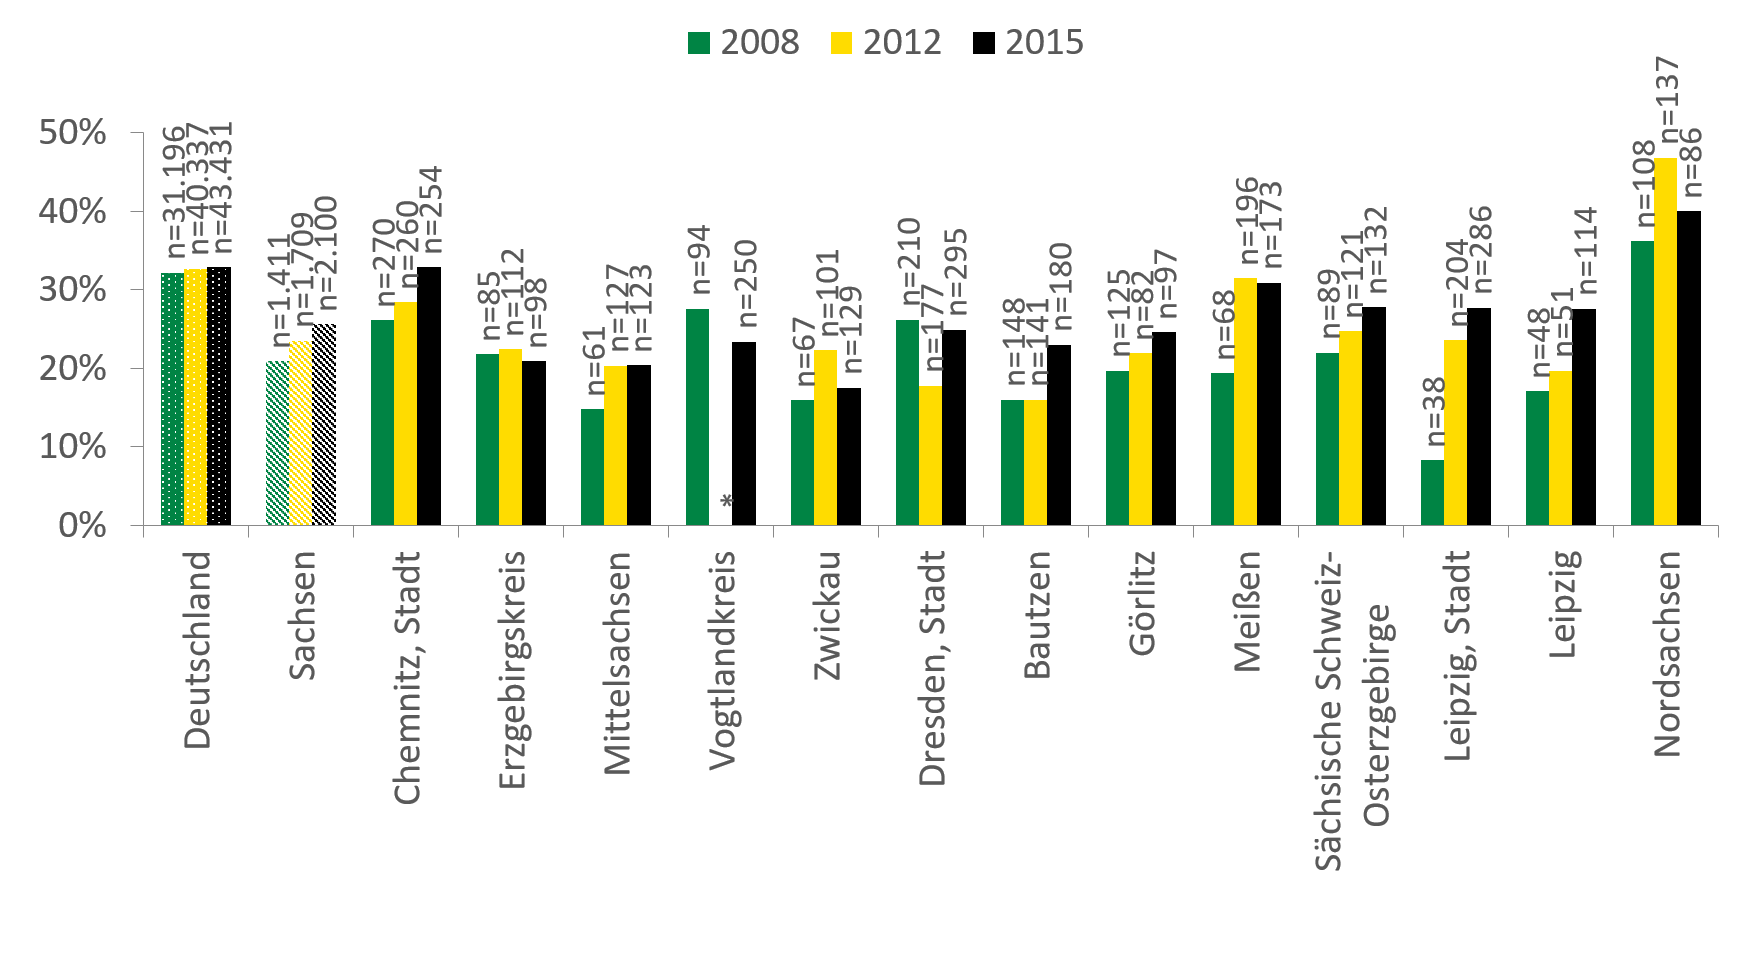 In Deutschland ist der Anteil der Klientel ohne abgeschlossenen Schulabschluss mit über 30 Prozent höher als die 25 Prozent in Sachsen, auch wenn dieser einen steigenden Trend aufweist. Mit fast 45 Prozent war der Anteil für Nordsachsen im Jahr 2012 am höchsten, auch wenn er bis 2015 auf etwas unter 40 Prozent gefallen ist, liegt er deutlich über dem Sachsendurchschnitt. In den meisten Landkreisen steigt der Anteil derer ohne Schulabschluss.